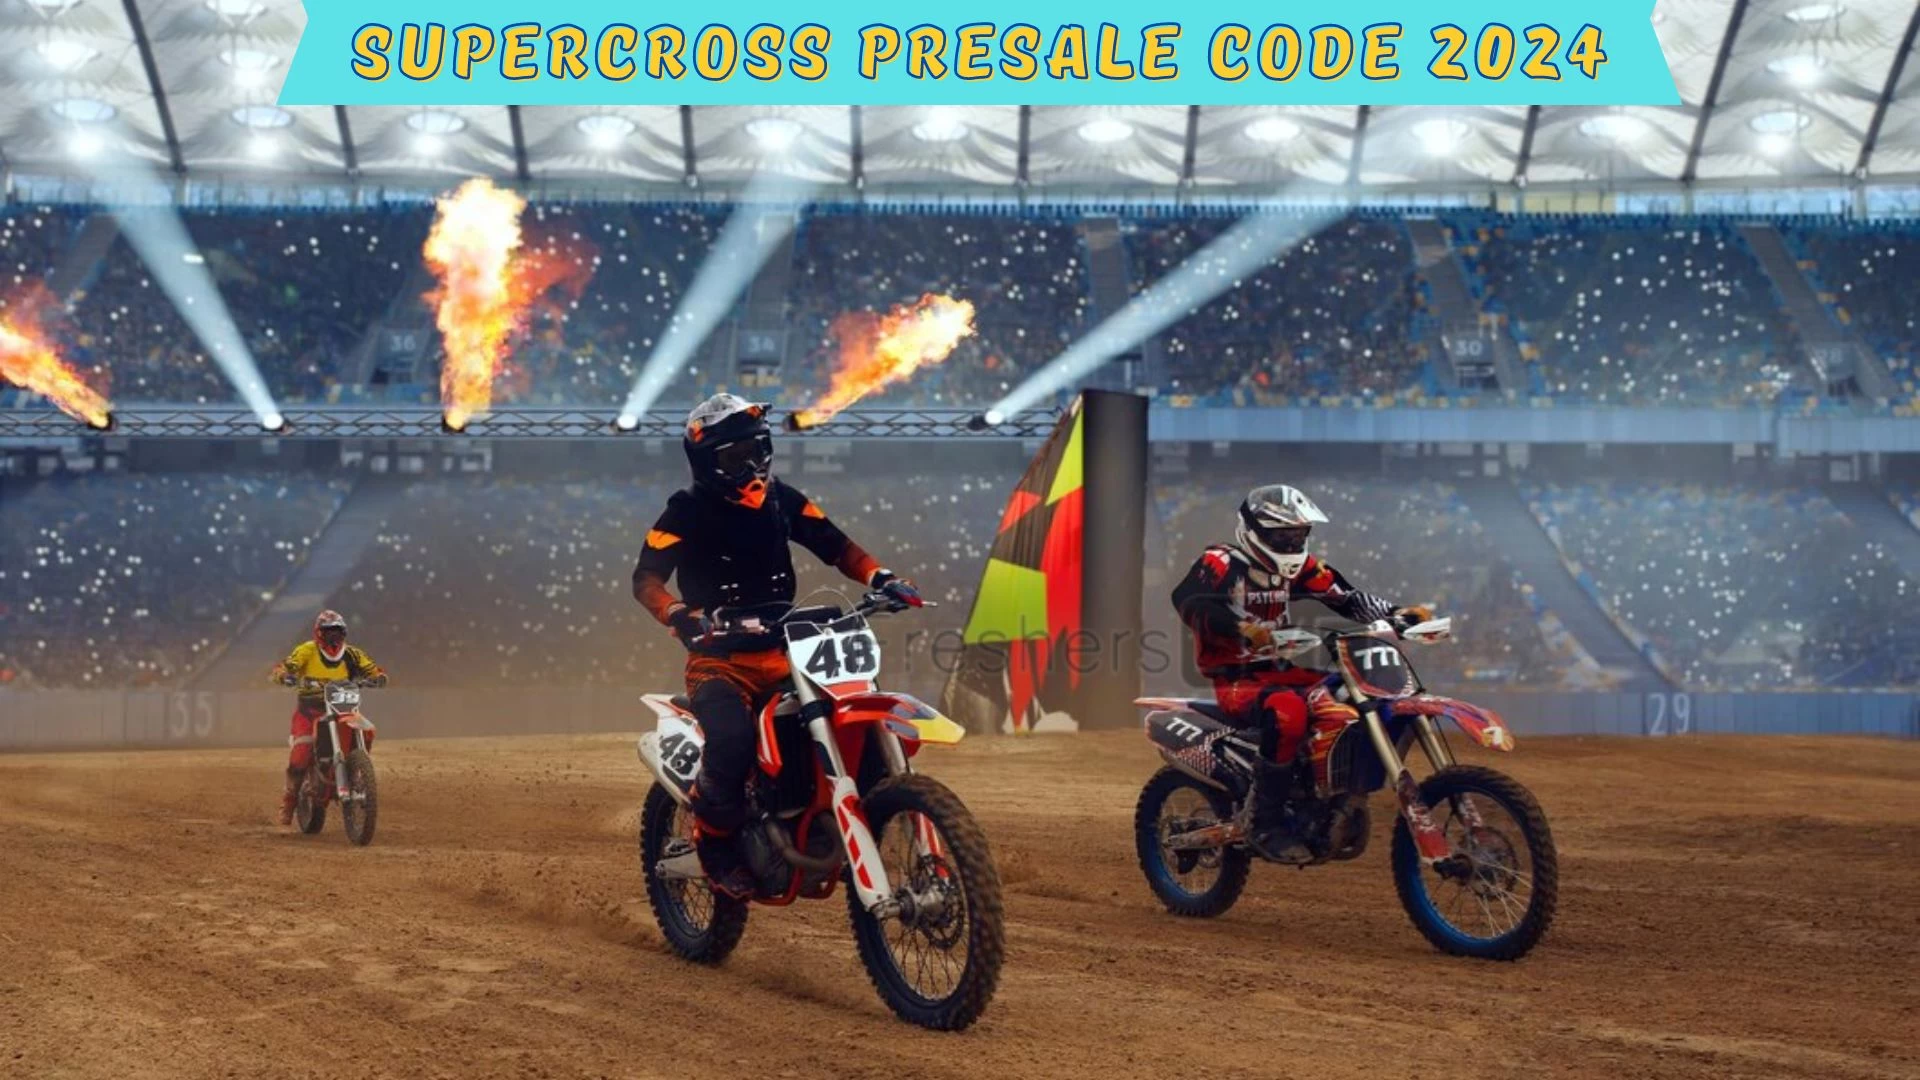 Código de preventa de Supercross 2024, ¿cómo conseguir entradas de preventa de Supercross?